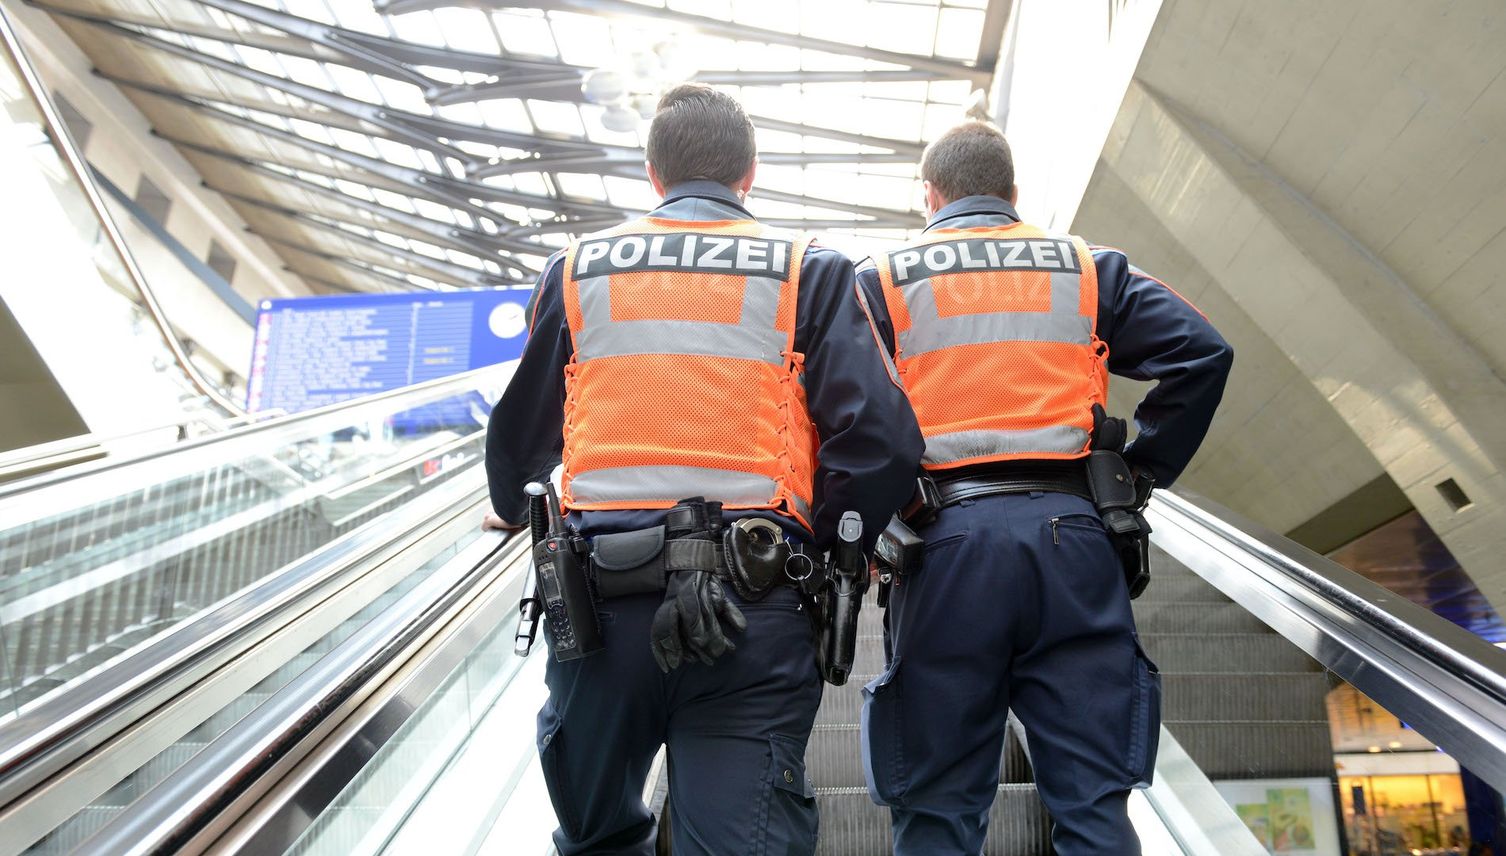 Reussbühl: 19-Jähriger nach Raubüberfall festgenommen